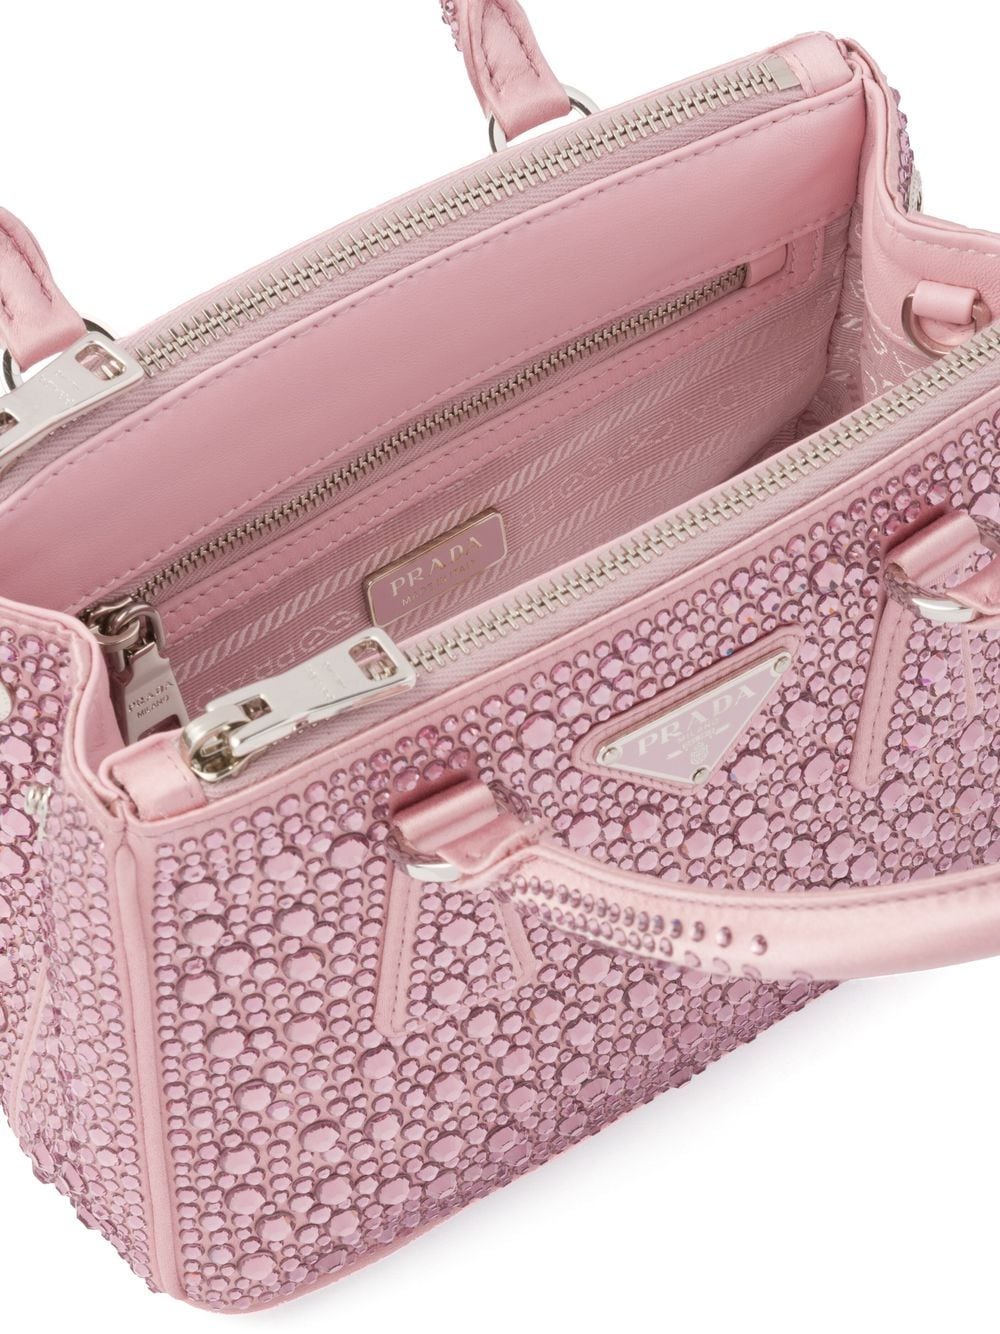 Prada Pre-owned Crystal-embellished Handbag - Pink